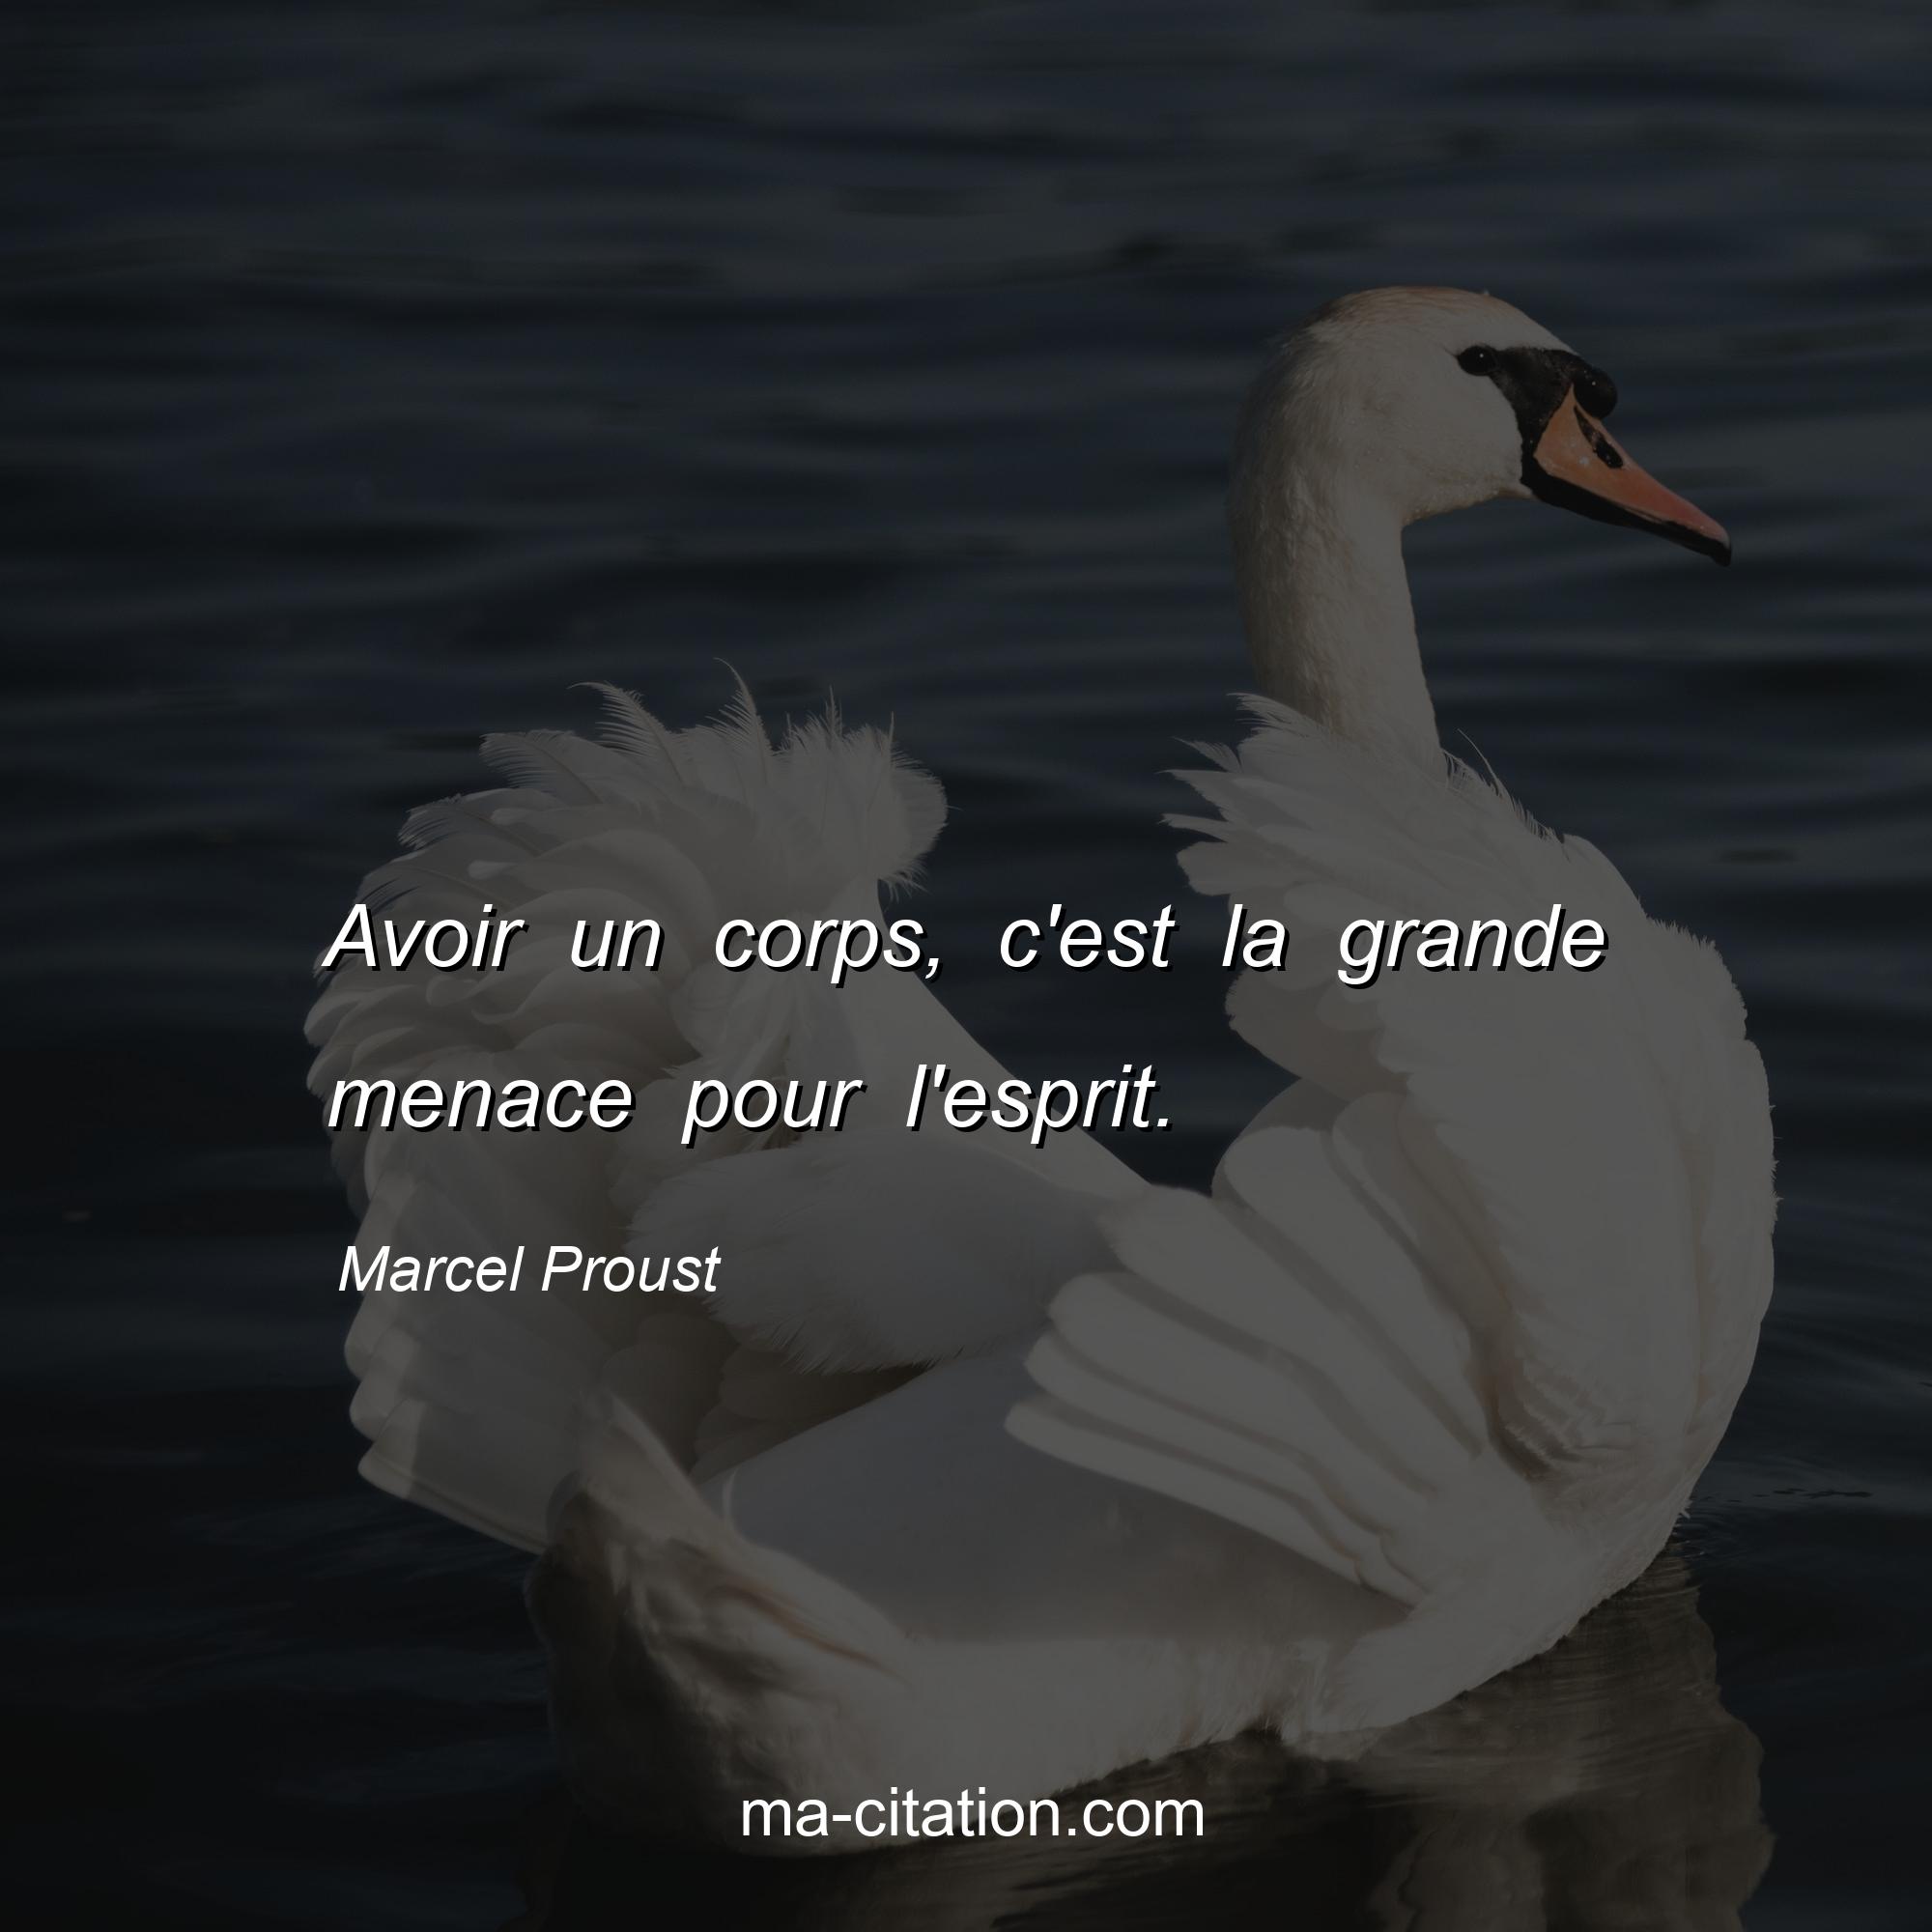 Marcel Proust : Avoir un corps, c'est la grande menace pour l'esprit.